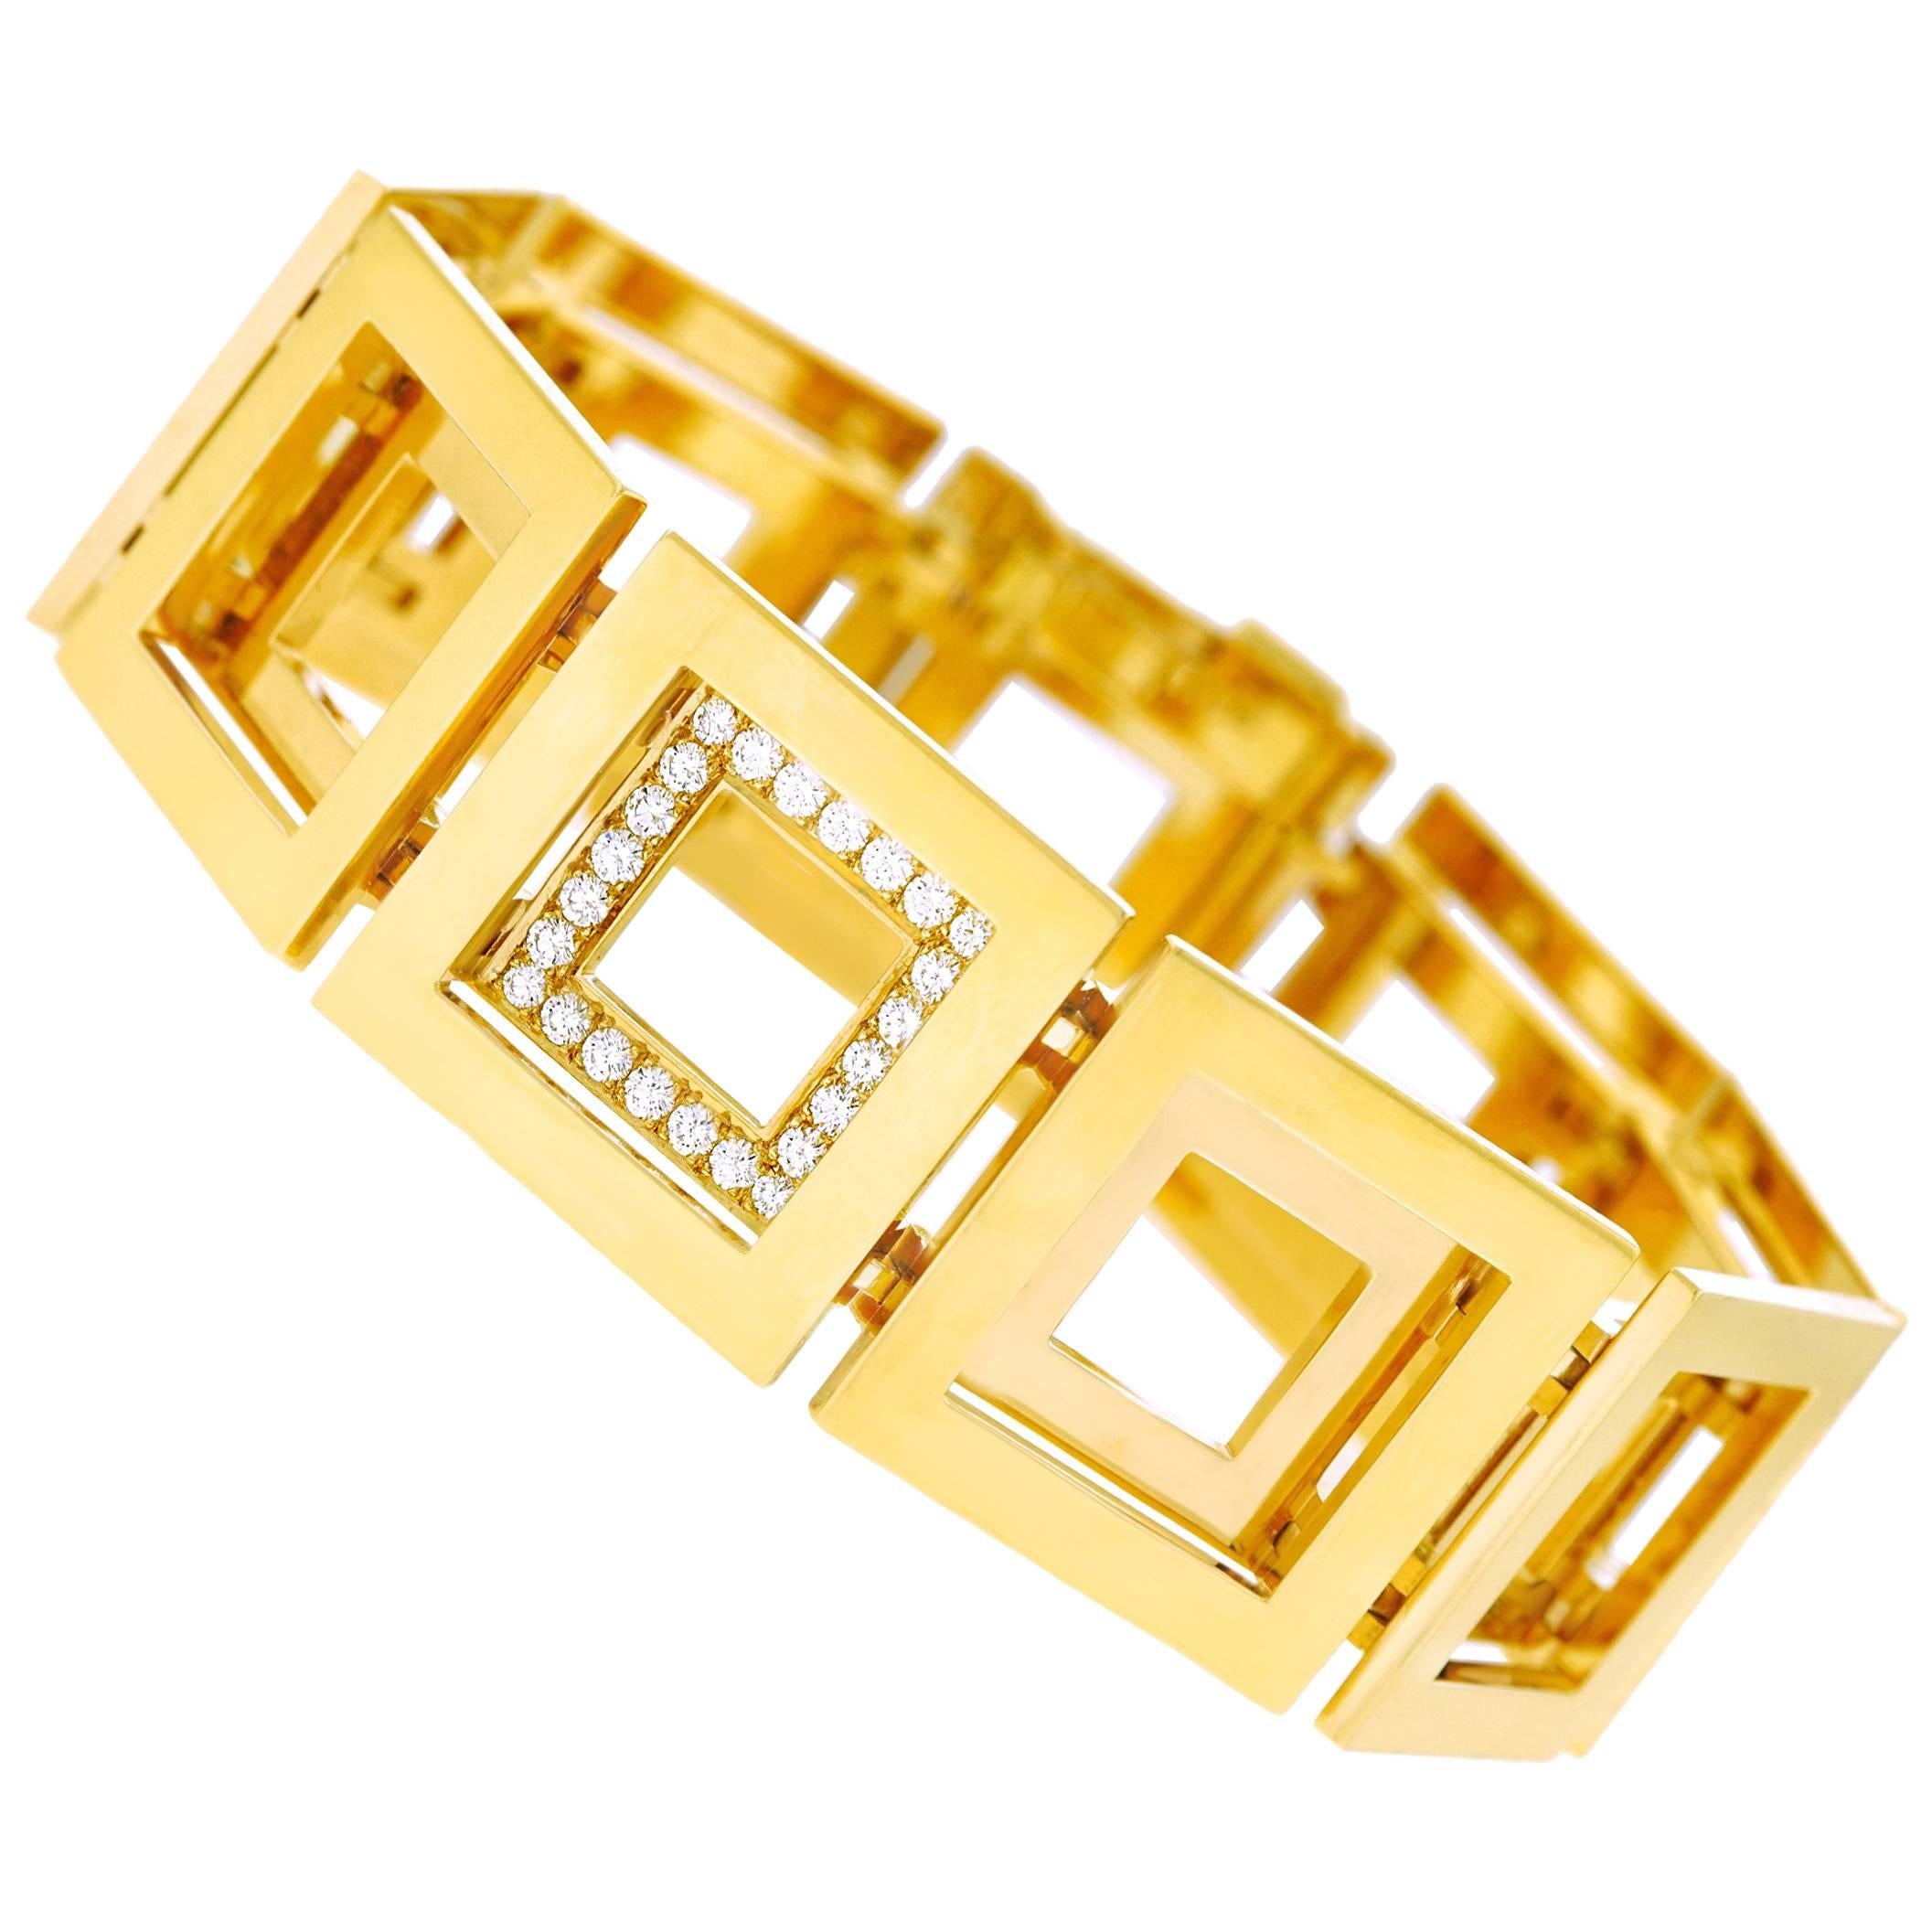 Blochliger Modernist Gold Bracelet